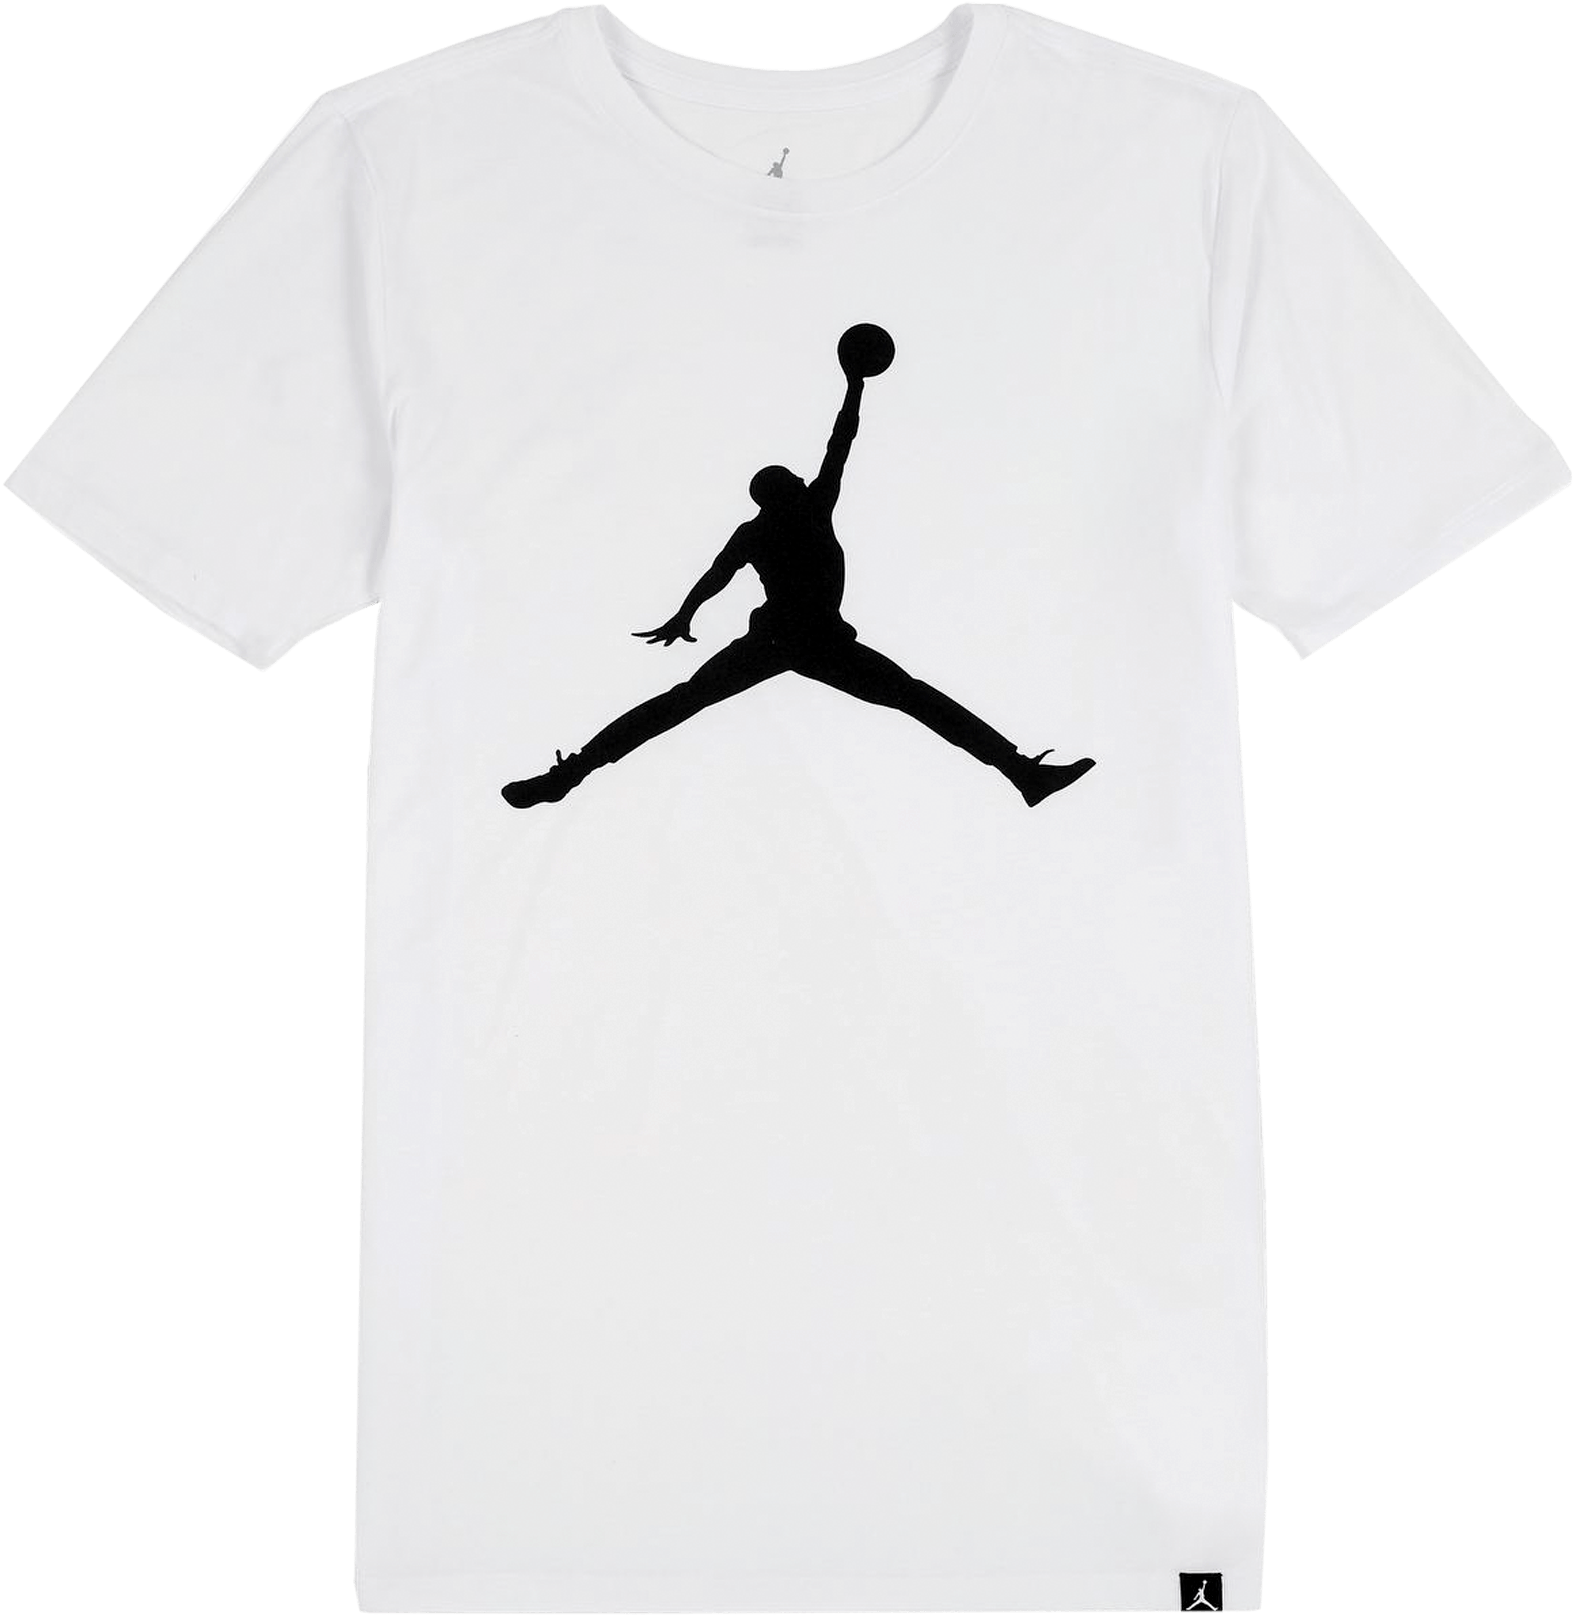 Download Iconic Jumpman Logo Tee - Air Jordan T Shirt Design White PNG ...